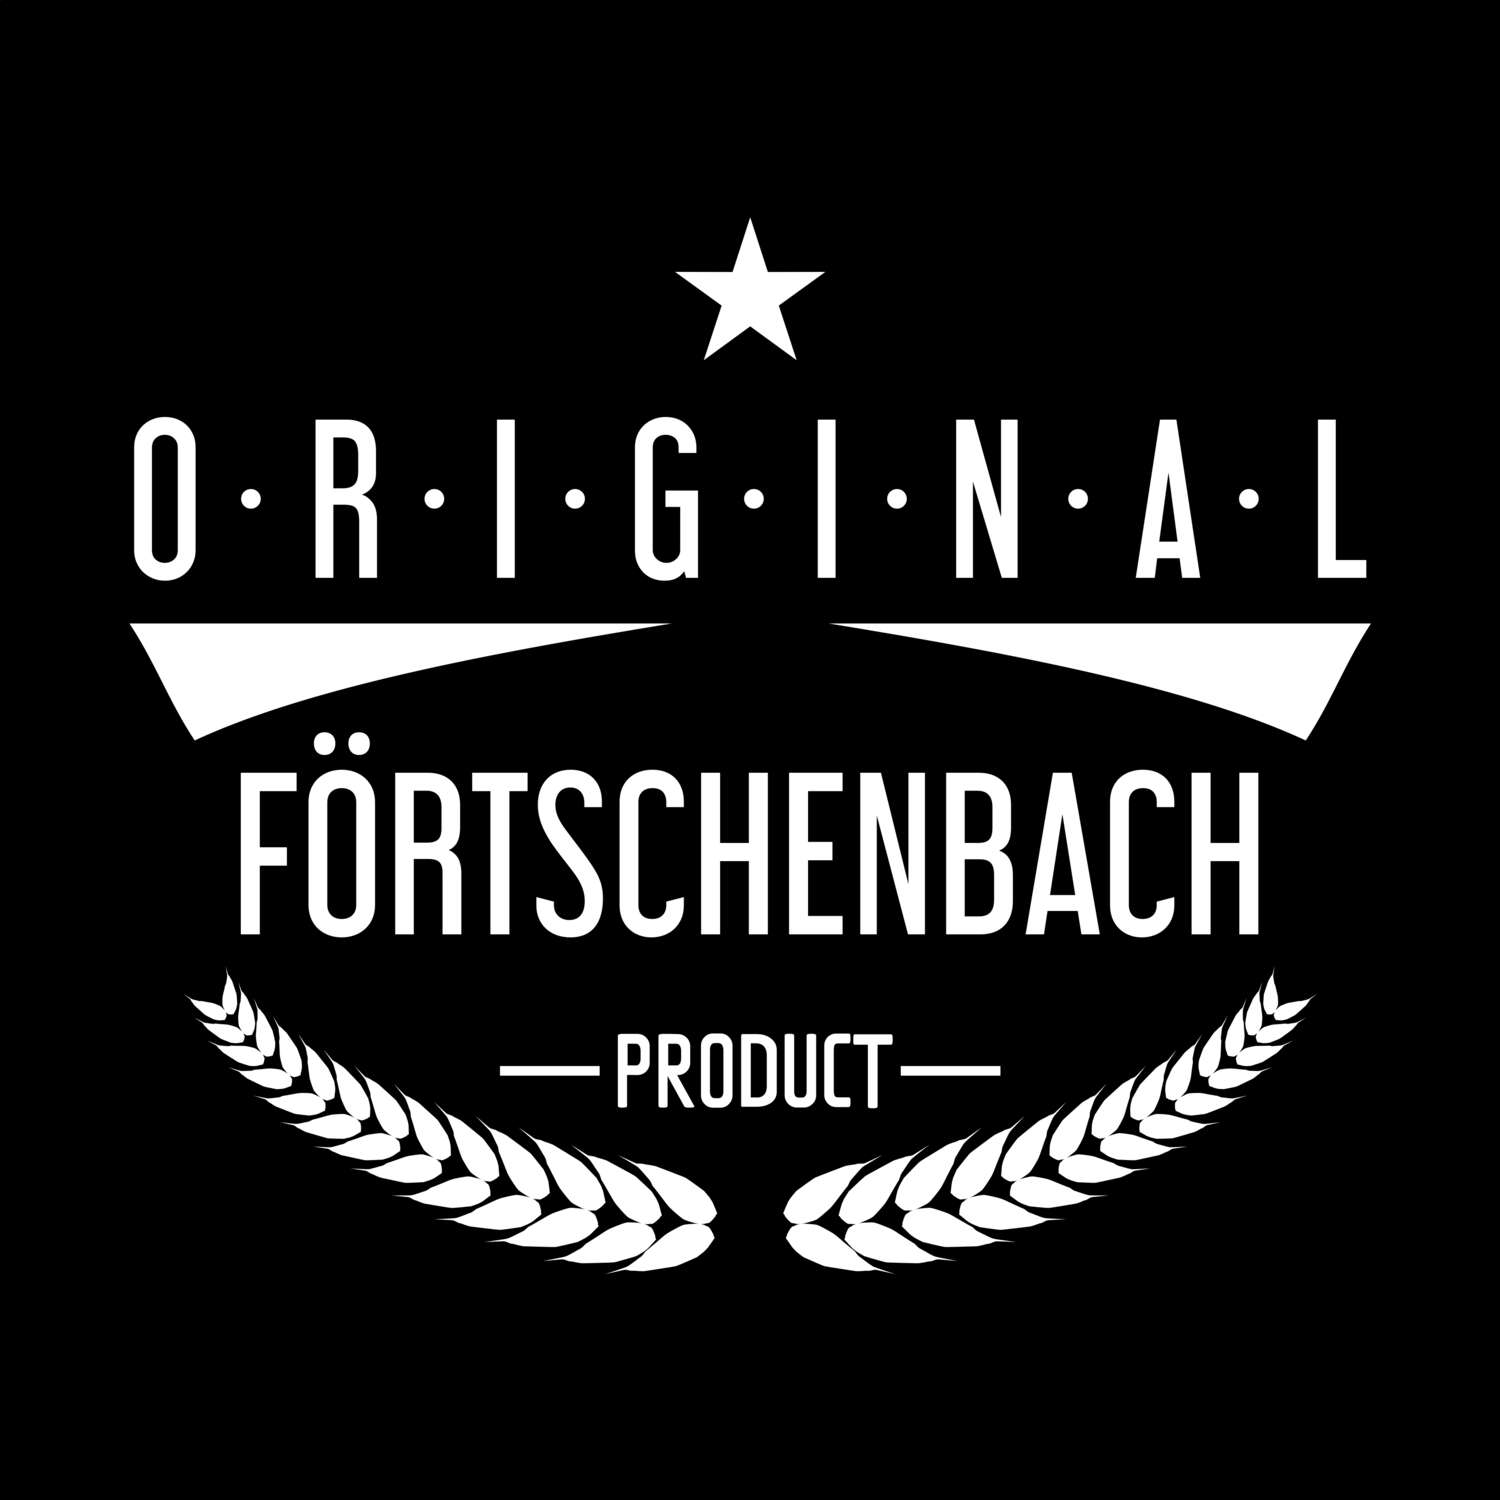 Förtschenbach T-Shirt »Original Product«